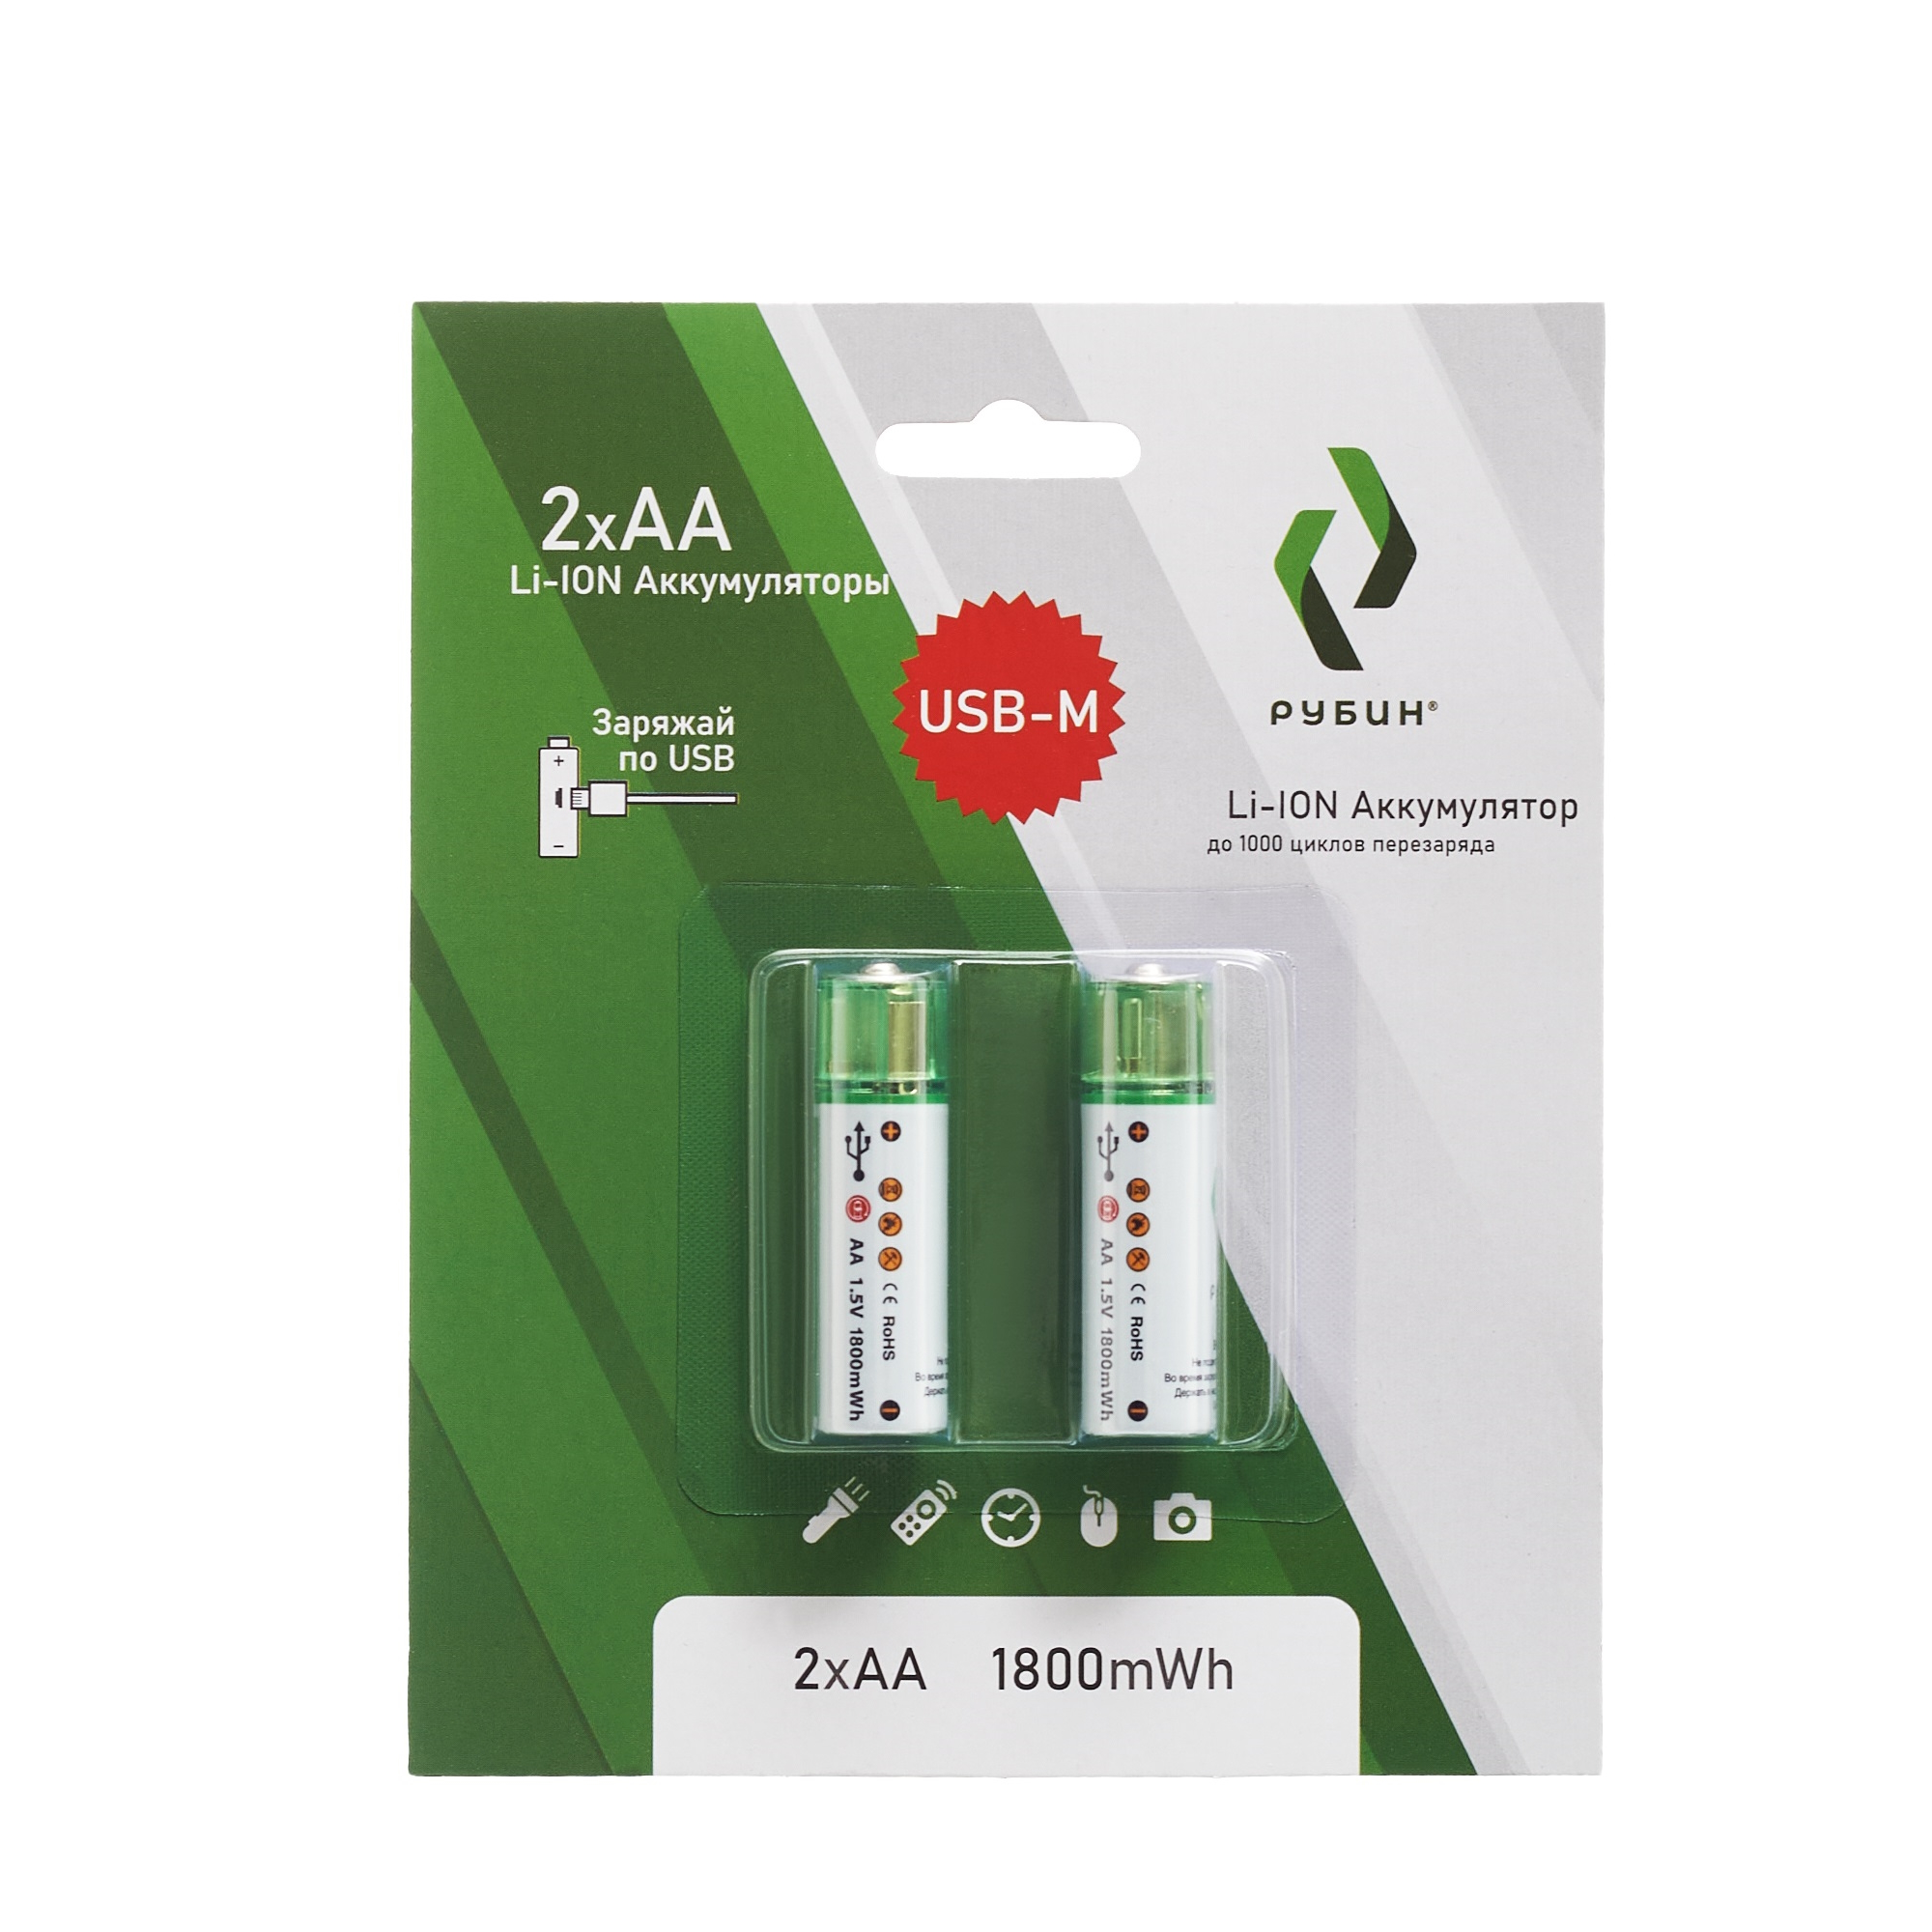 Аккумуляторная батарейка LI-ION РУБИН размер АА 1,5 В (1800mWh AA USB) 2 шт в блистере аккумуляторная батарейка li ion рубин размер аа 1 5 в 1800mwh aa usb 2 шт в блистере